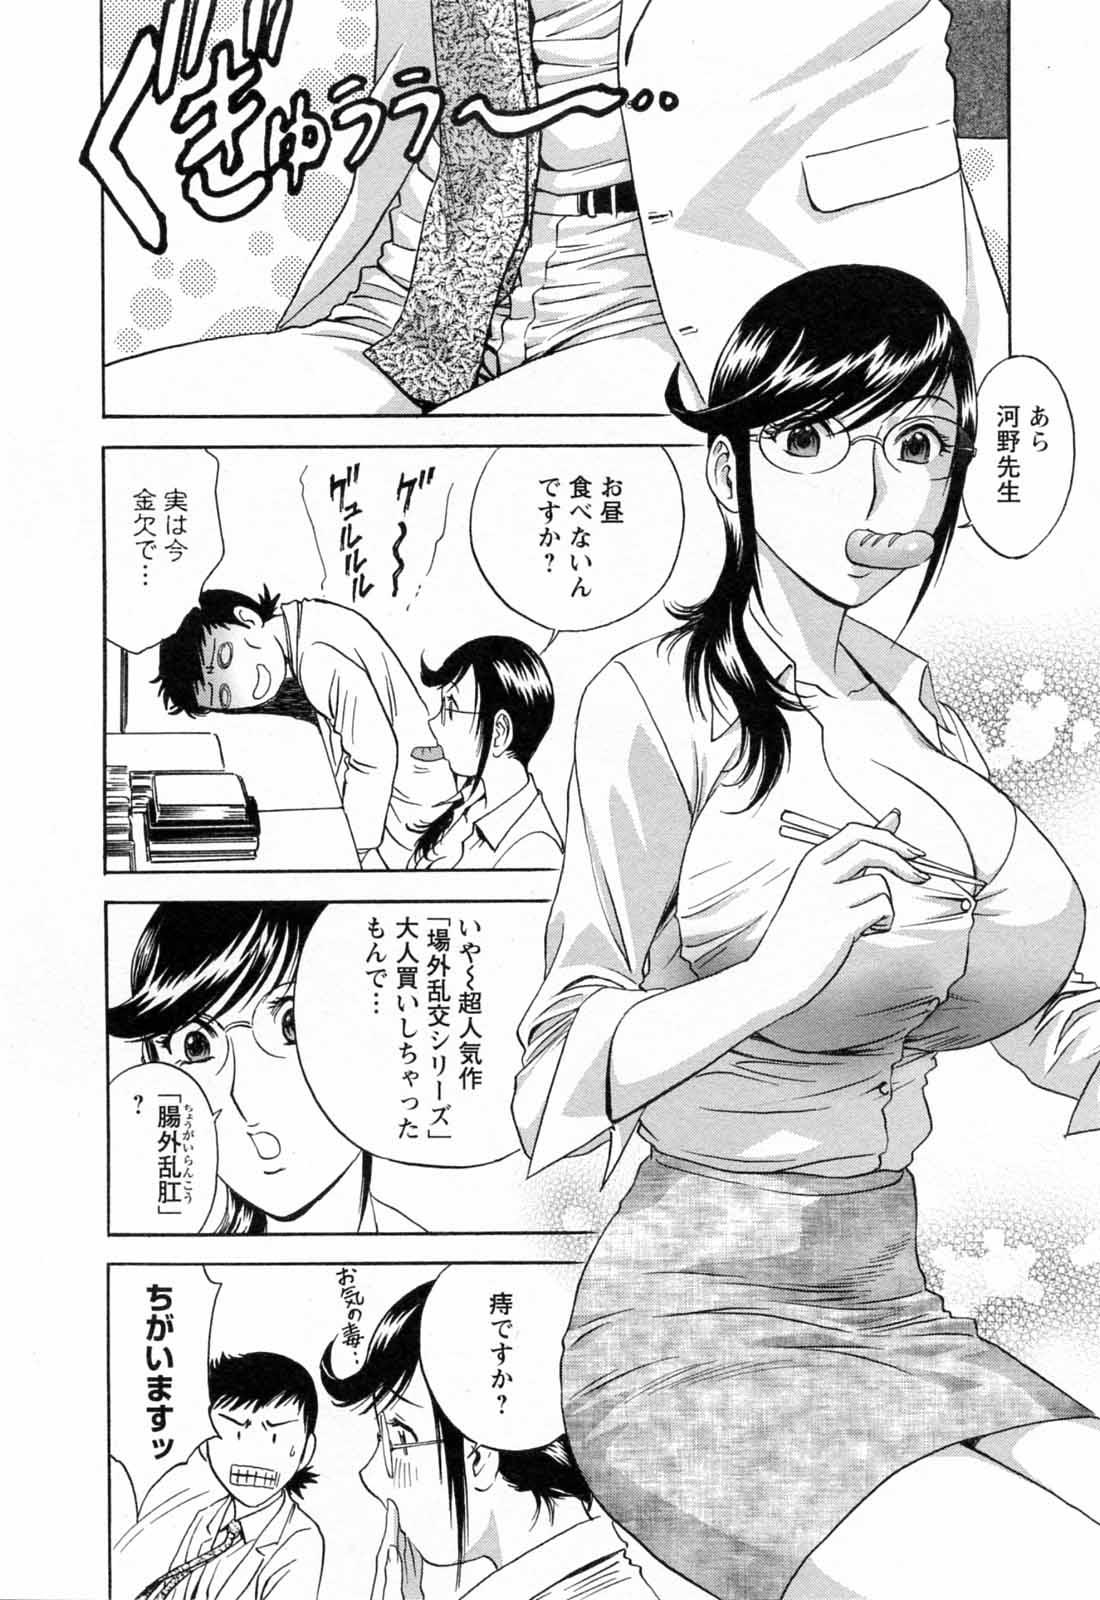 [Hidemaru] Mo-Retsu! Boin Sensei (Boing Boing Teacher) Vol.5 75